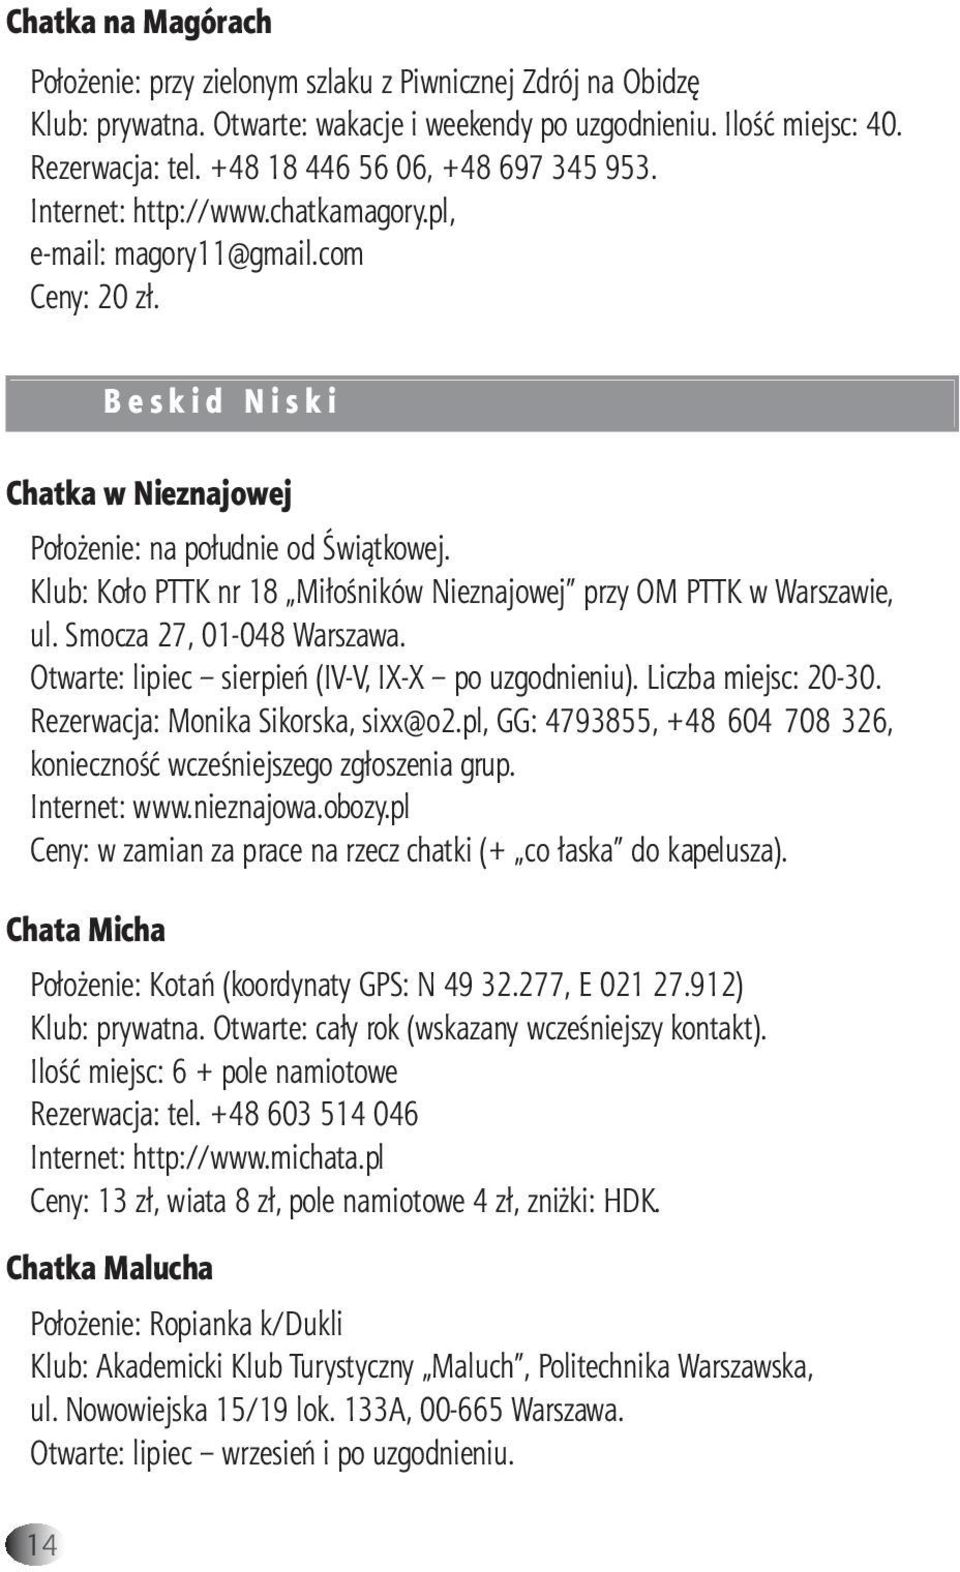 Klub: Koło PTTK nr 18 Miłośników Nieznajowej przy OM PTTK w Warszawie, ul. Smocza 27, 01-048 Warszawa. Otwarte: lipiec sierpień (IV-V, IX-X po uzgodnieniu). Liczba miejsc: 20-30.